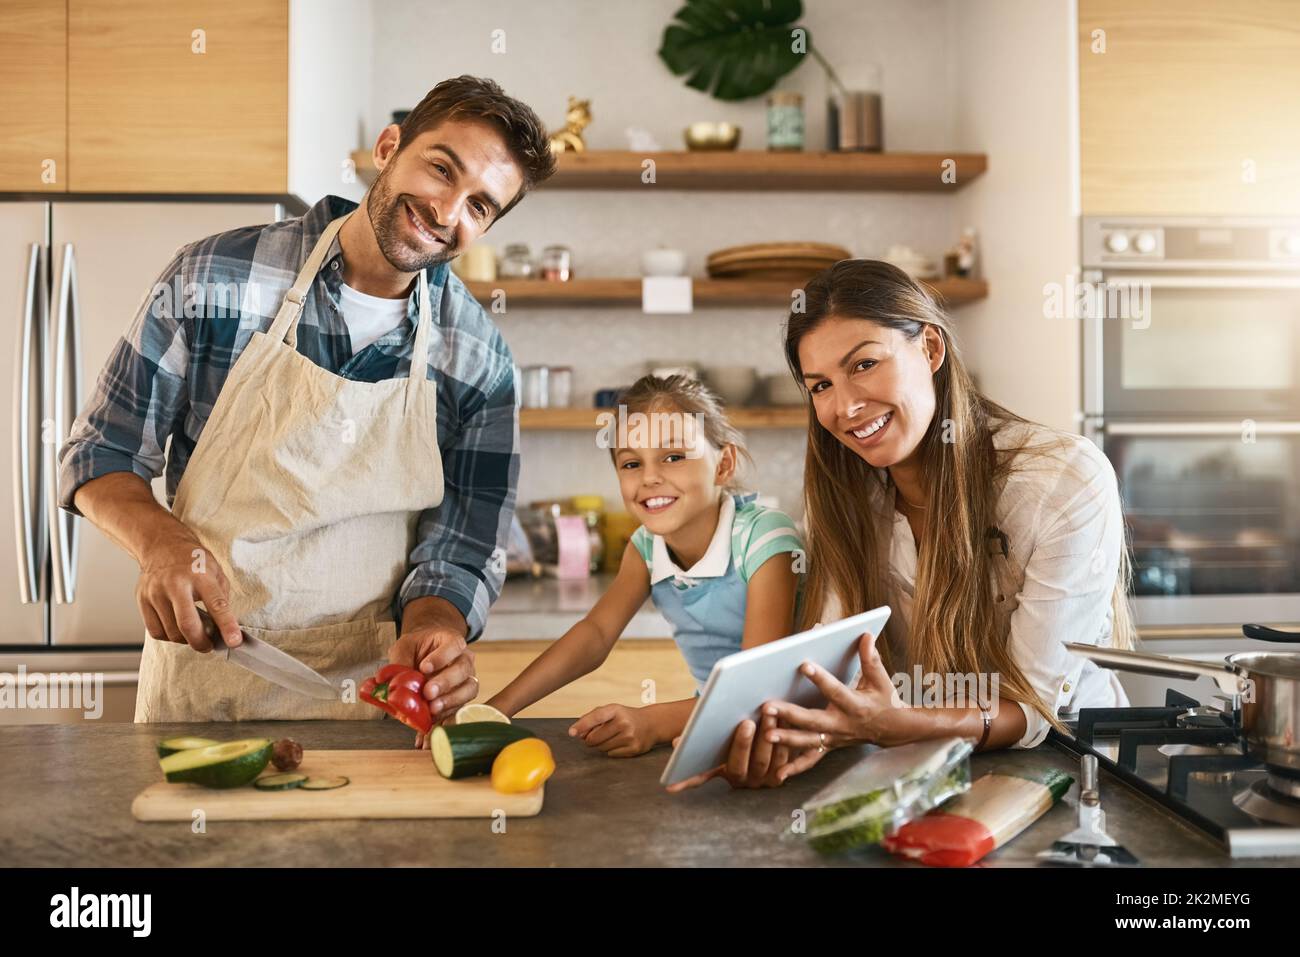 C'est ainsi que nous passons nos samedis. Portrait de deux parents heureux et de leur jeune fille essayant ensemble une nouvelle recette dans la cuisine. Banque D'Images